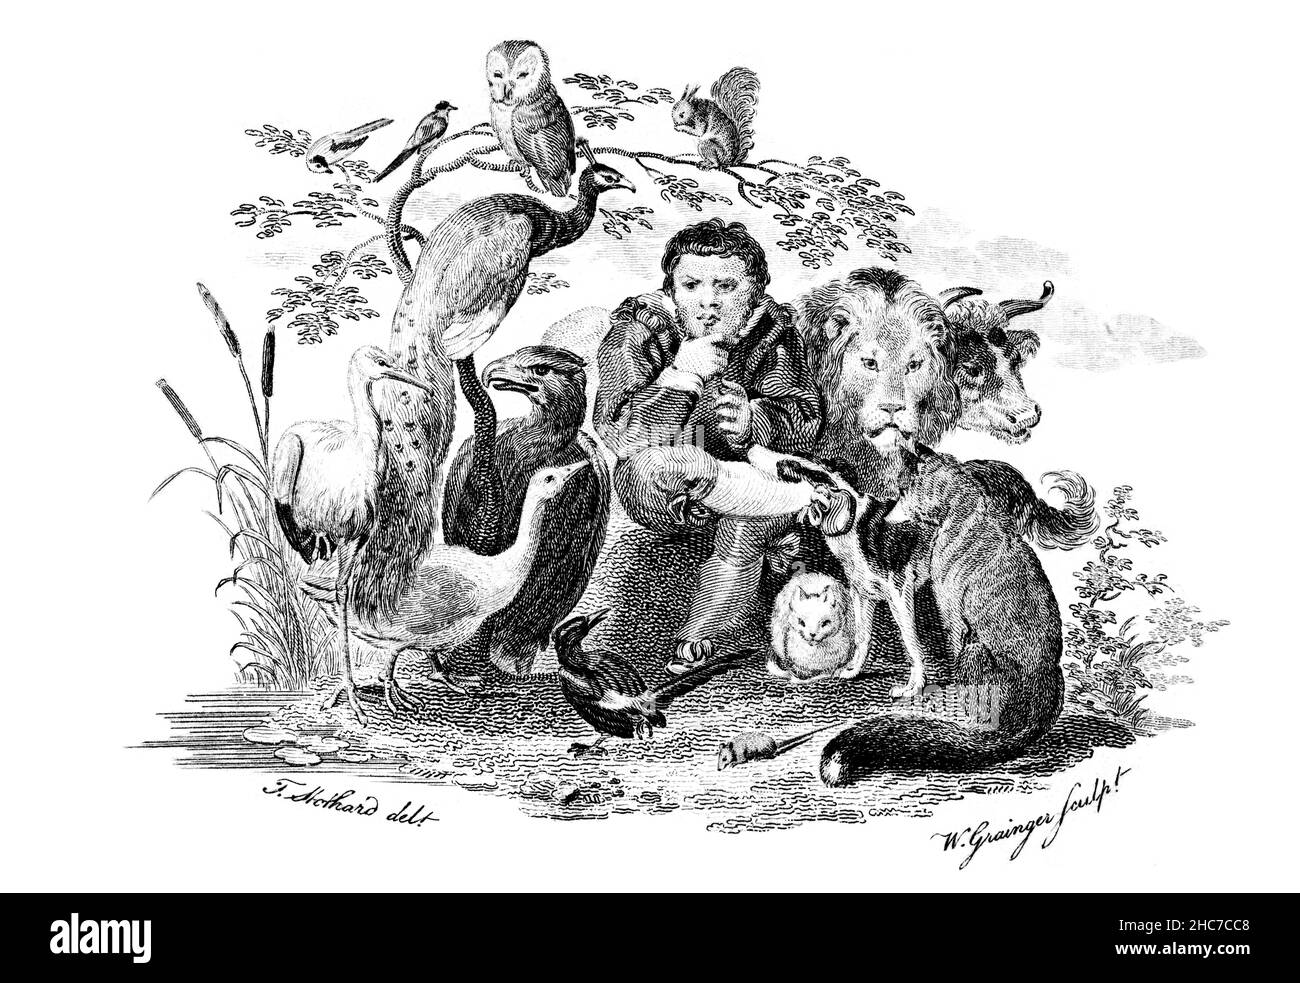 Gravierte Frontspiez-Illustration der ersten Ausgabe von Stockdale’s Aesop’s Fables von 1793, gezeichnet von Thomas Stothard, gestochen von William Grainger Stockfoto